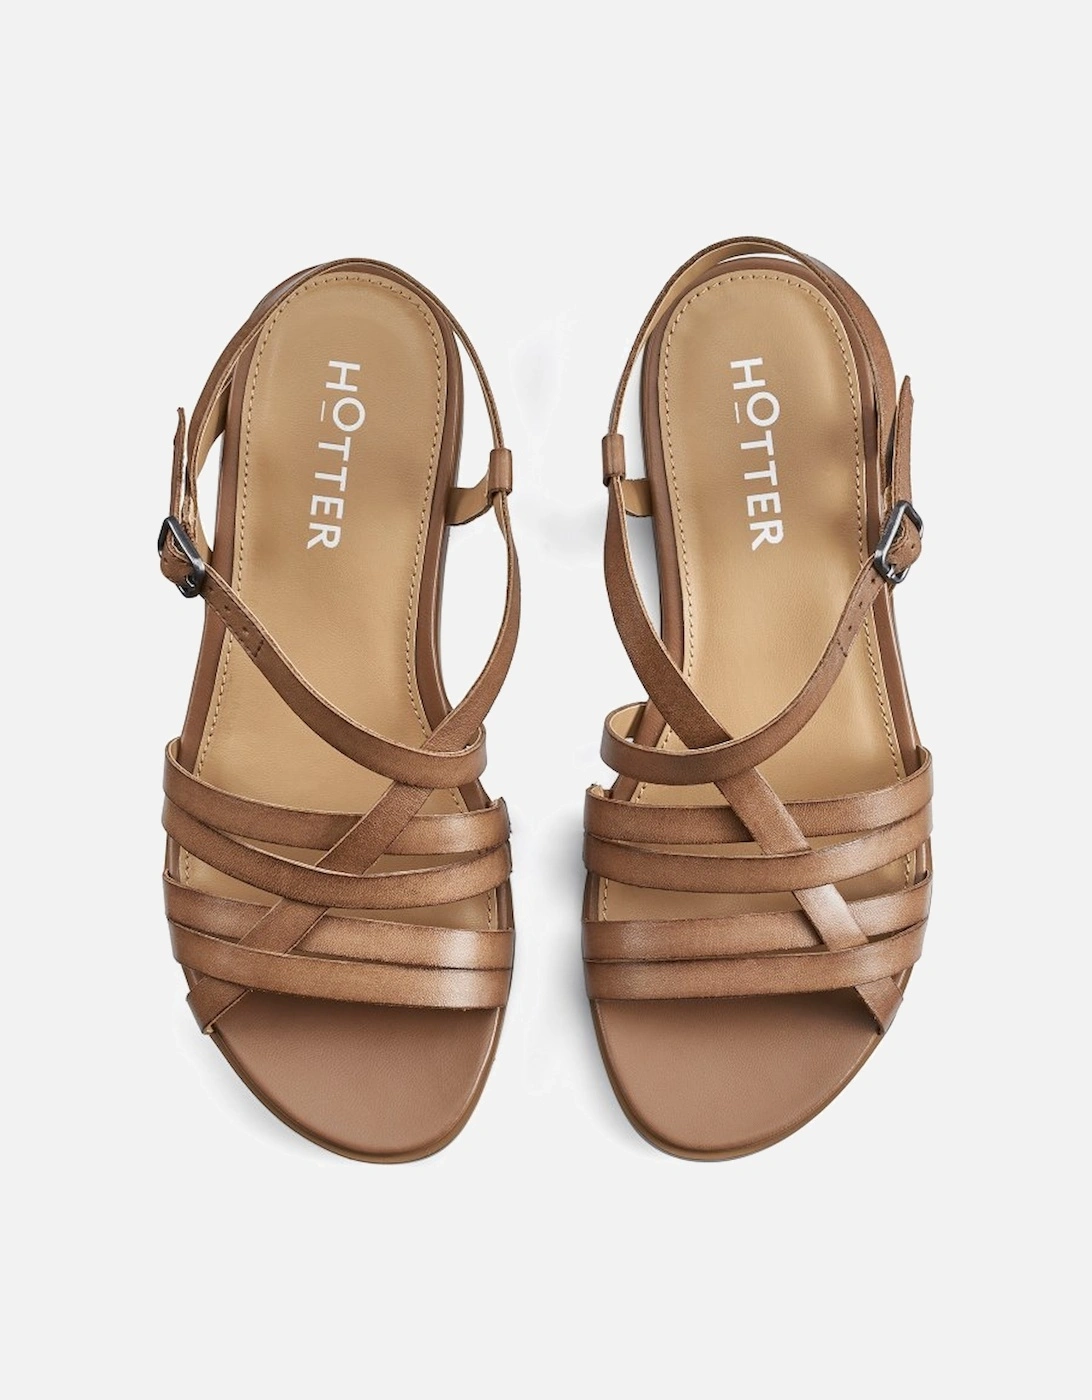 Sienna Womens Sandals